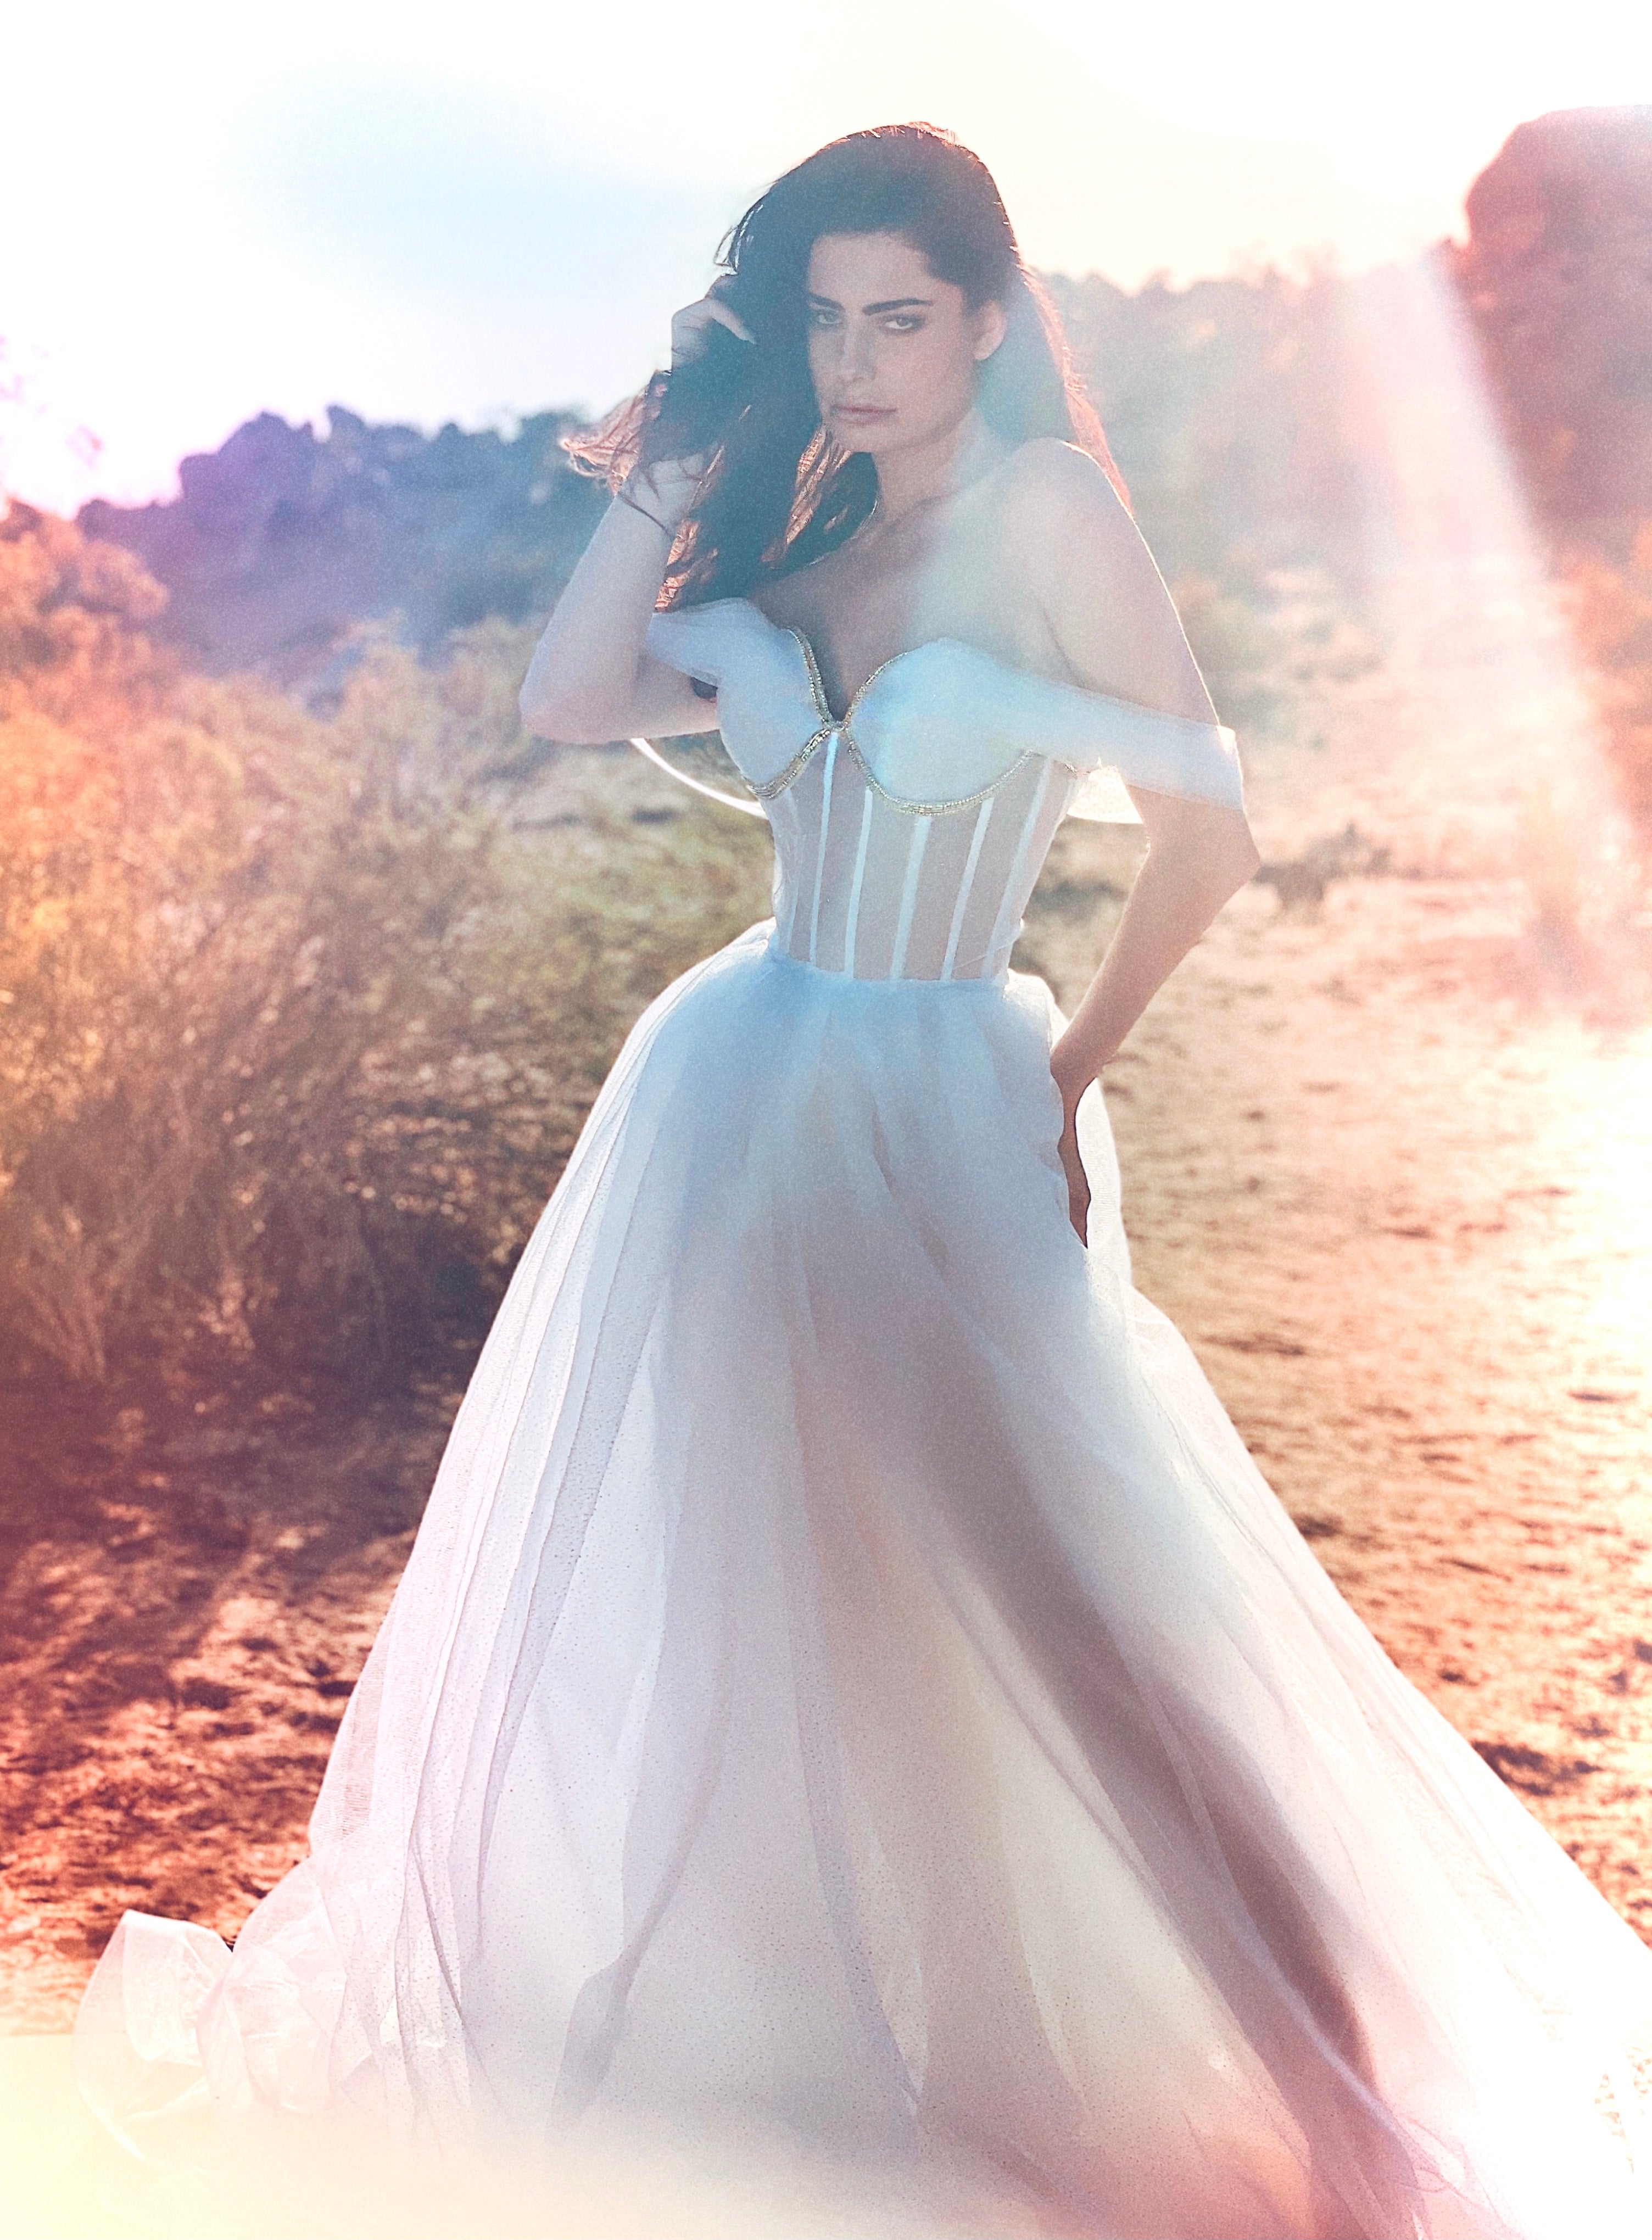 Ballgown wedding dress with illusion neckline and skirt shot in desert